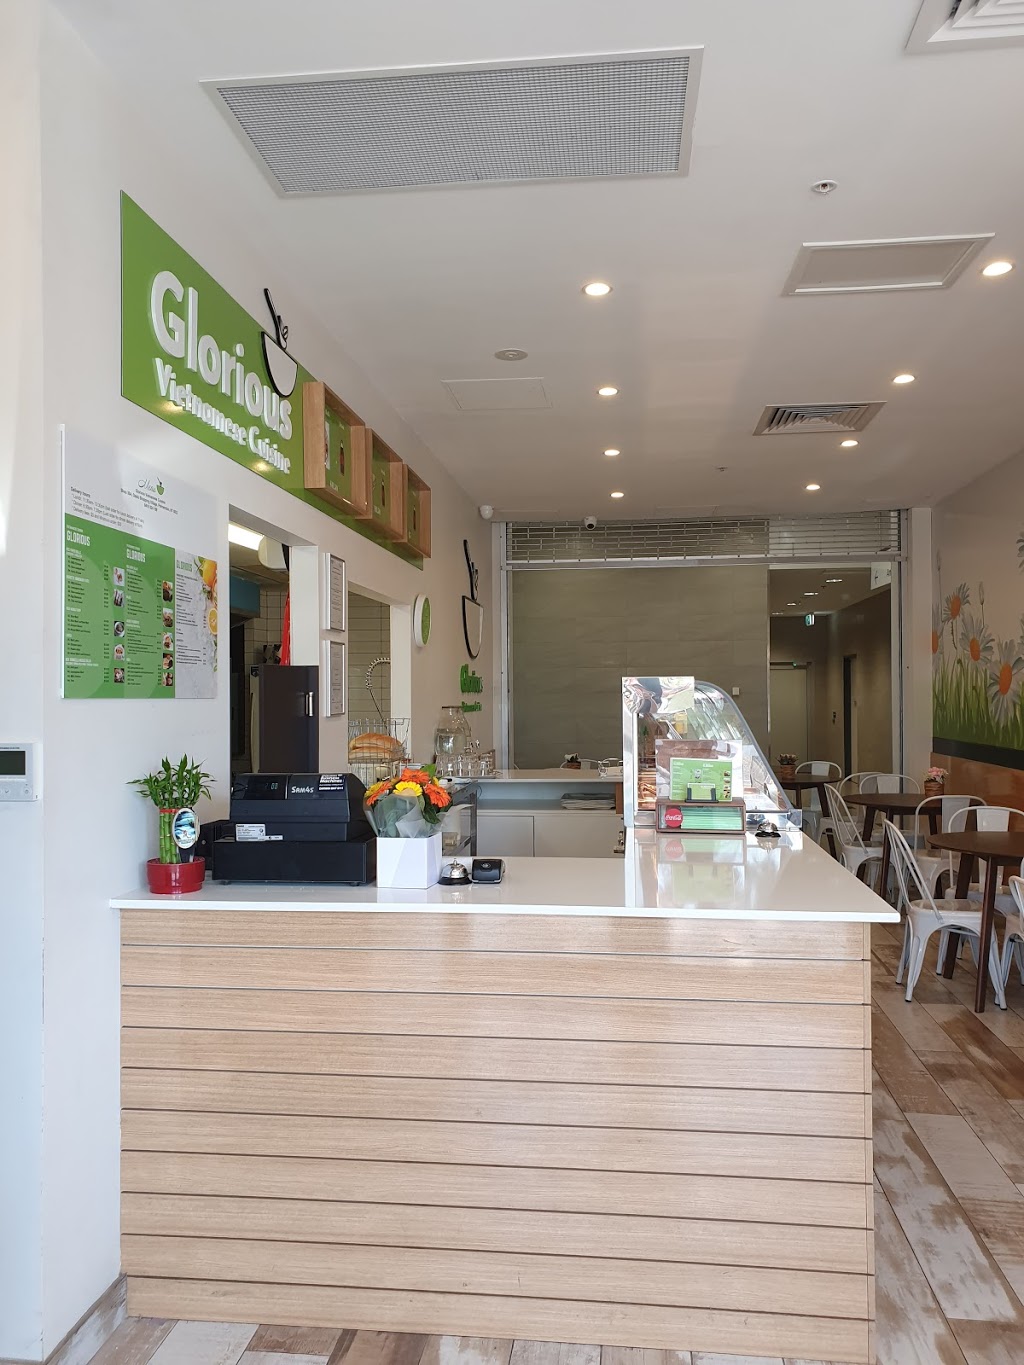 Glorious Vietnamese Cuisine | Shop 38a, Oasis Shopping Village, 15 Temple Terrace, Palmerston City NT 0830, Australia | Phone: 0416 824 199